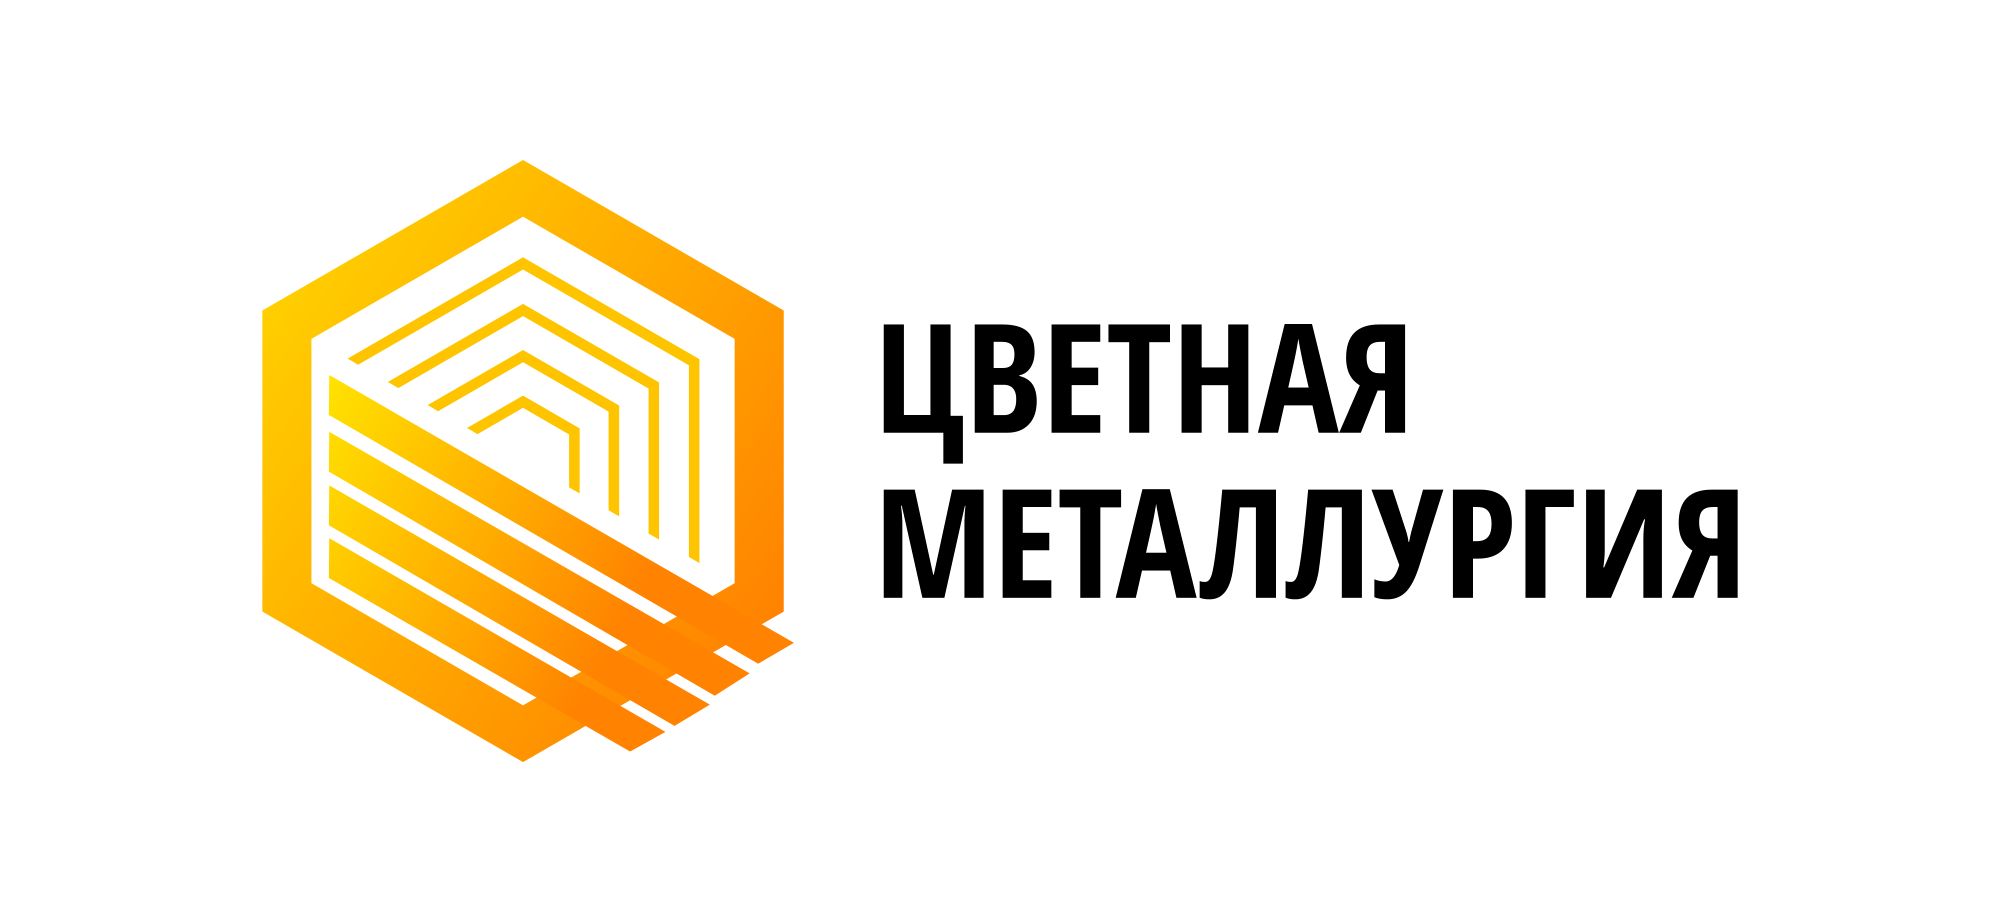 Ооо цветной. ПКФ цветная металлургия. Новосибирск цветная металлургия. Металлургия логотип. Логотипы металлургических компаний.